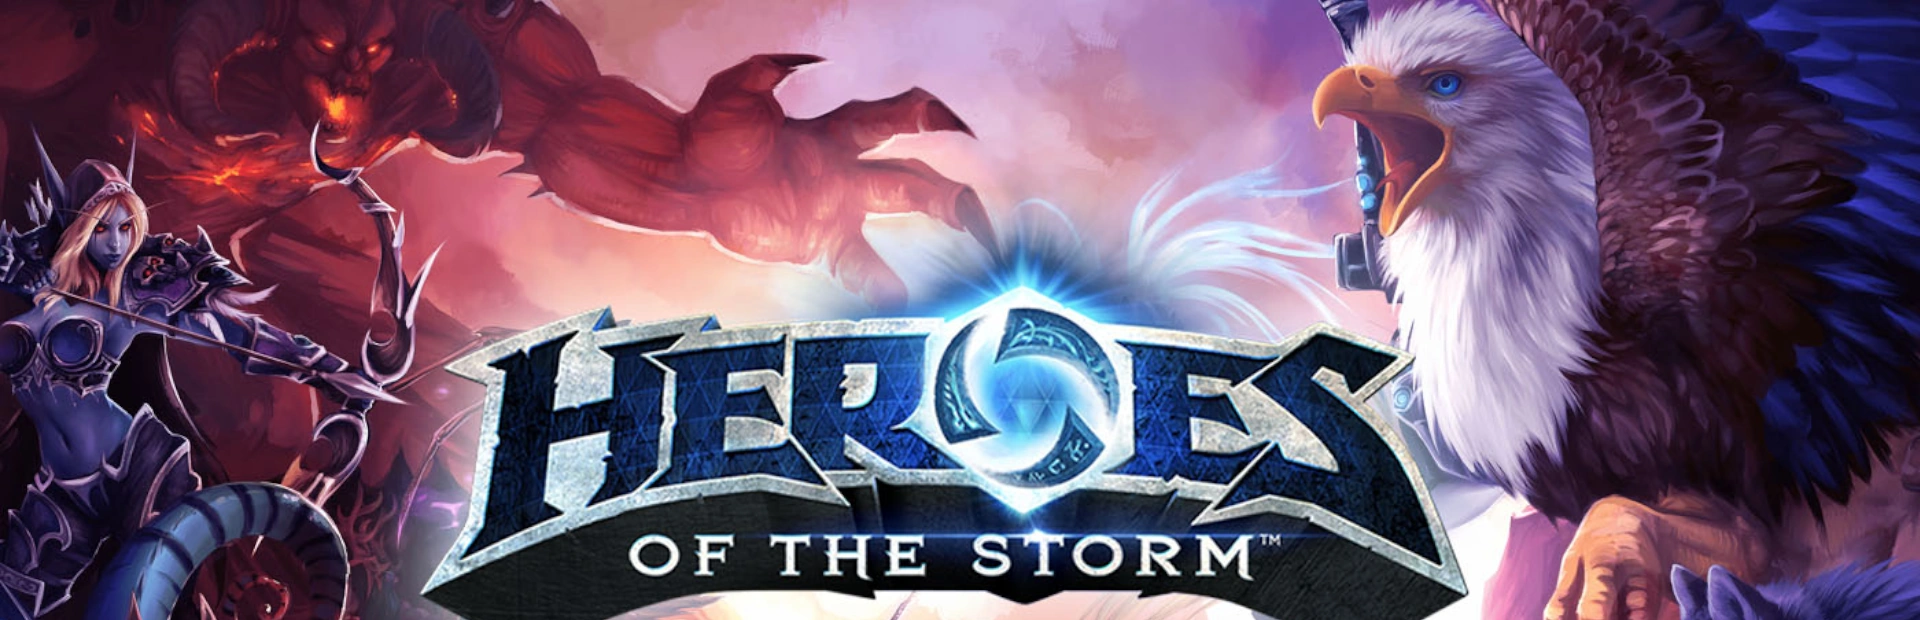 دانلود بازی Heroes of the Storm برای کامپیوتر | گیمباتو